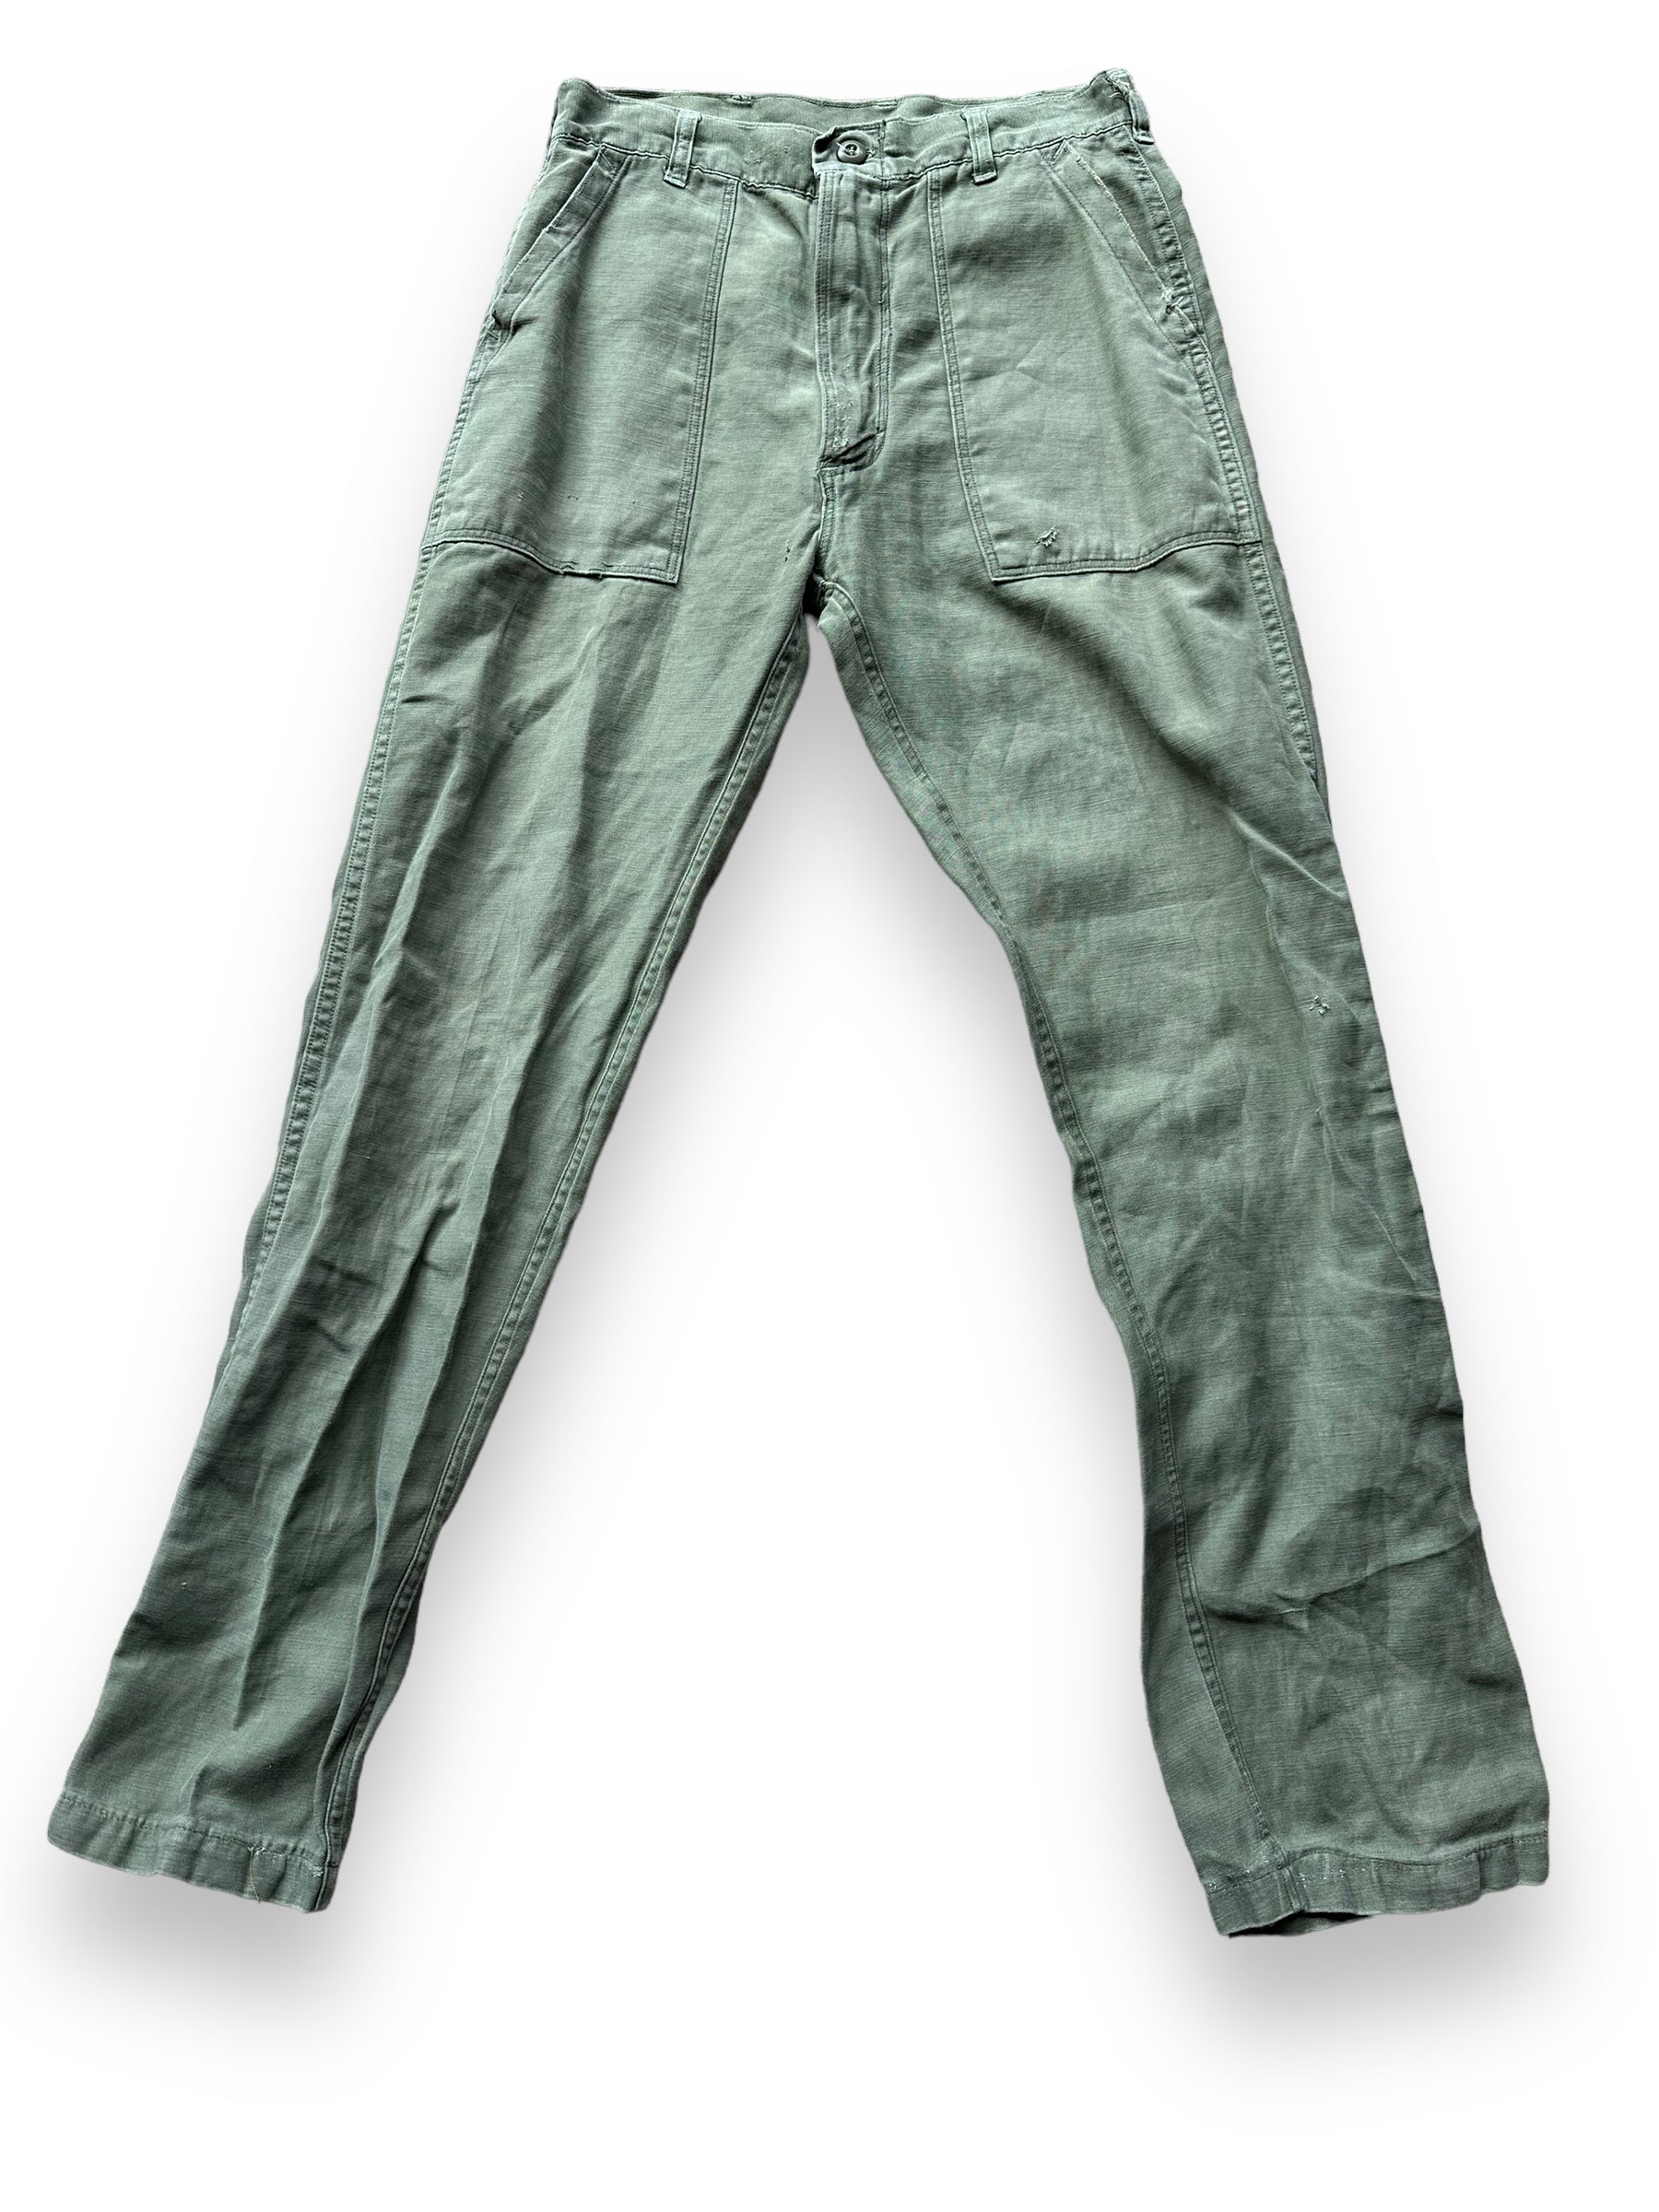 Front View of Vintage Sateen OG-107's W30 L32.5 | Vintage Viet Nam Era Baker Pants Seattle | Barn Owl Vintage Workwear